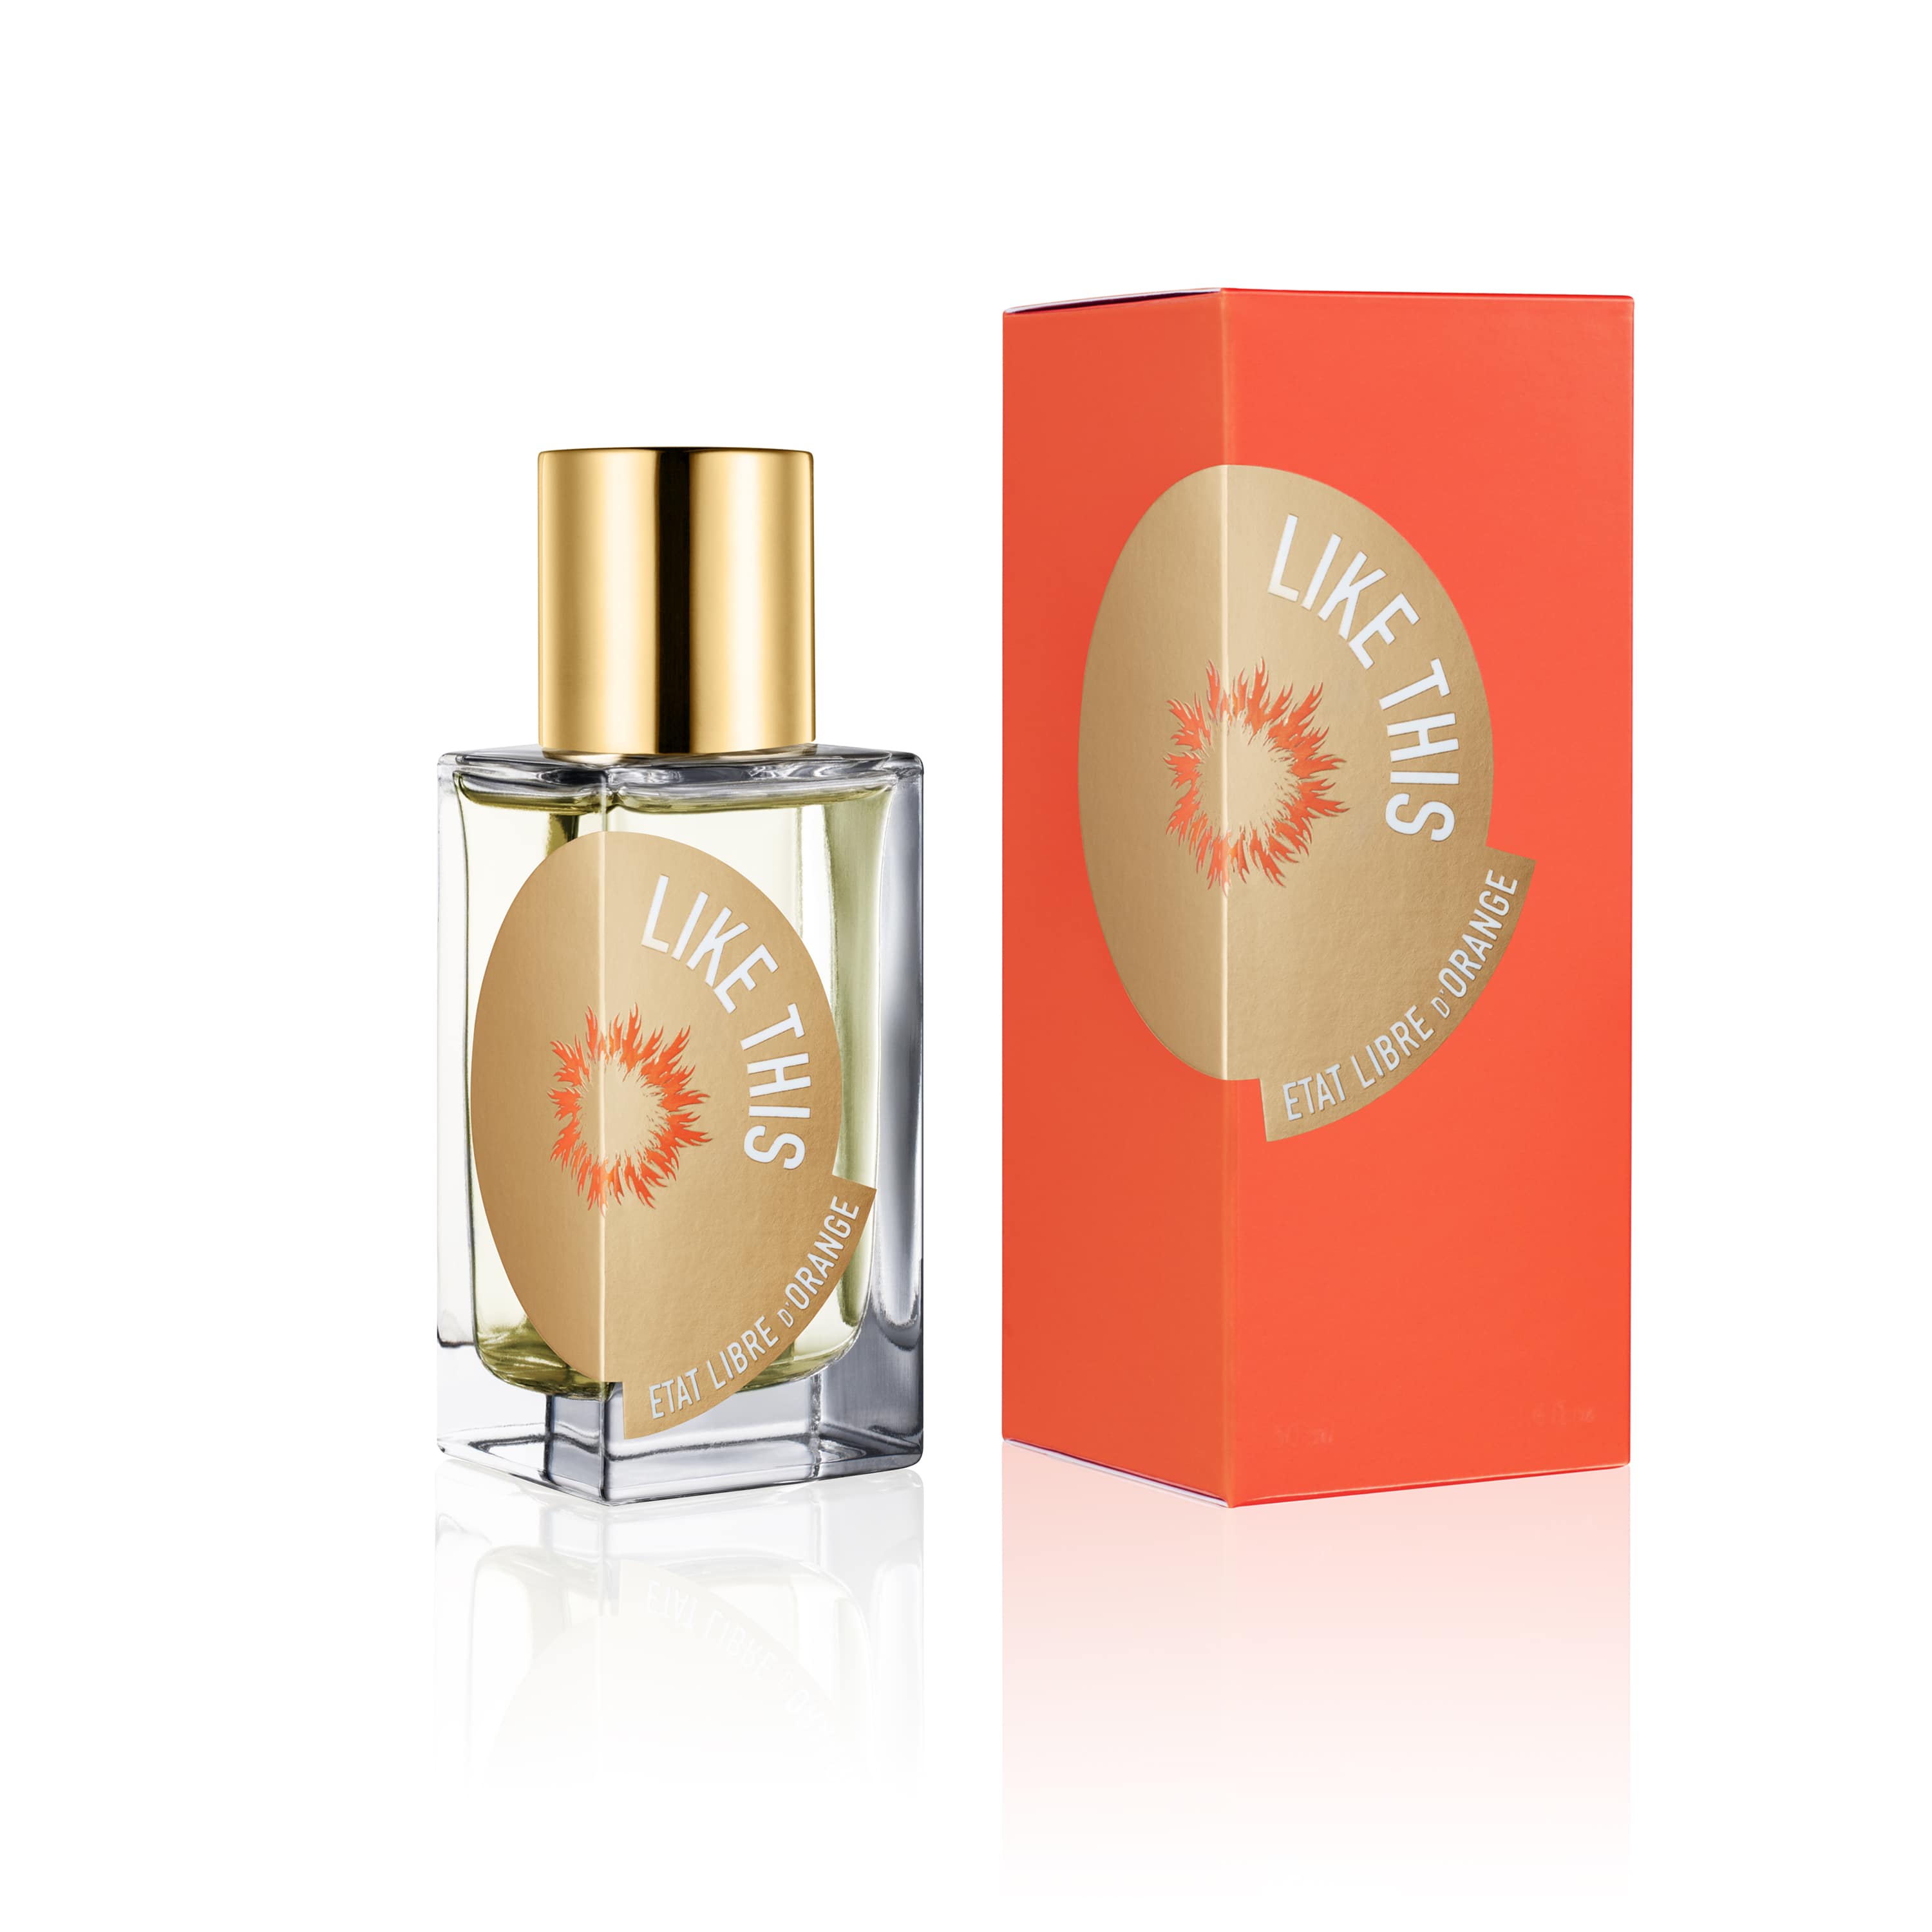 Like This - Eau de Parfum | Etat Libre d'Orange